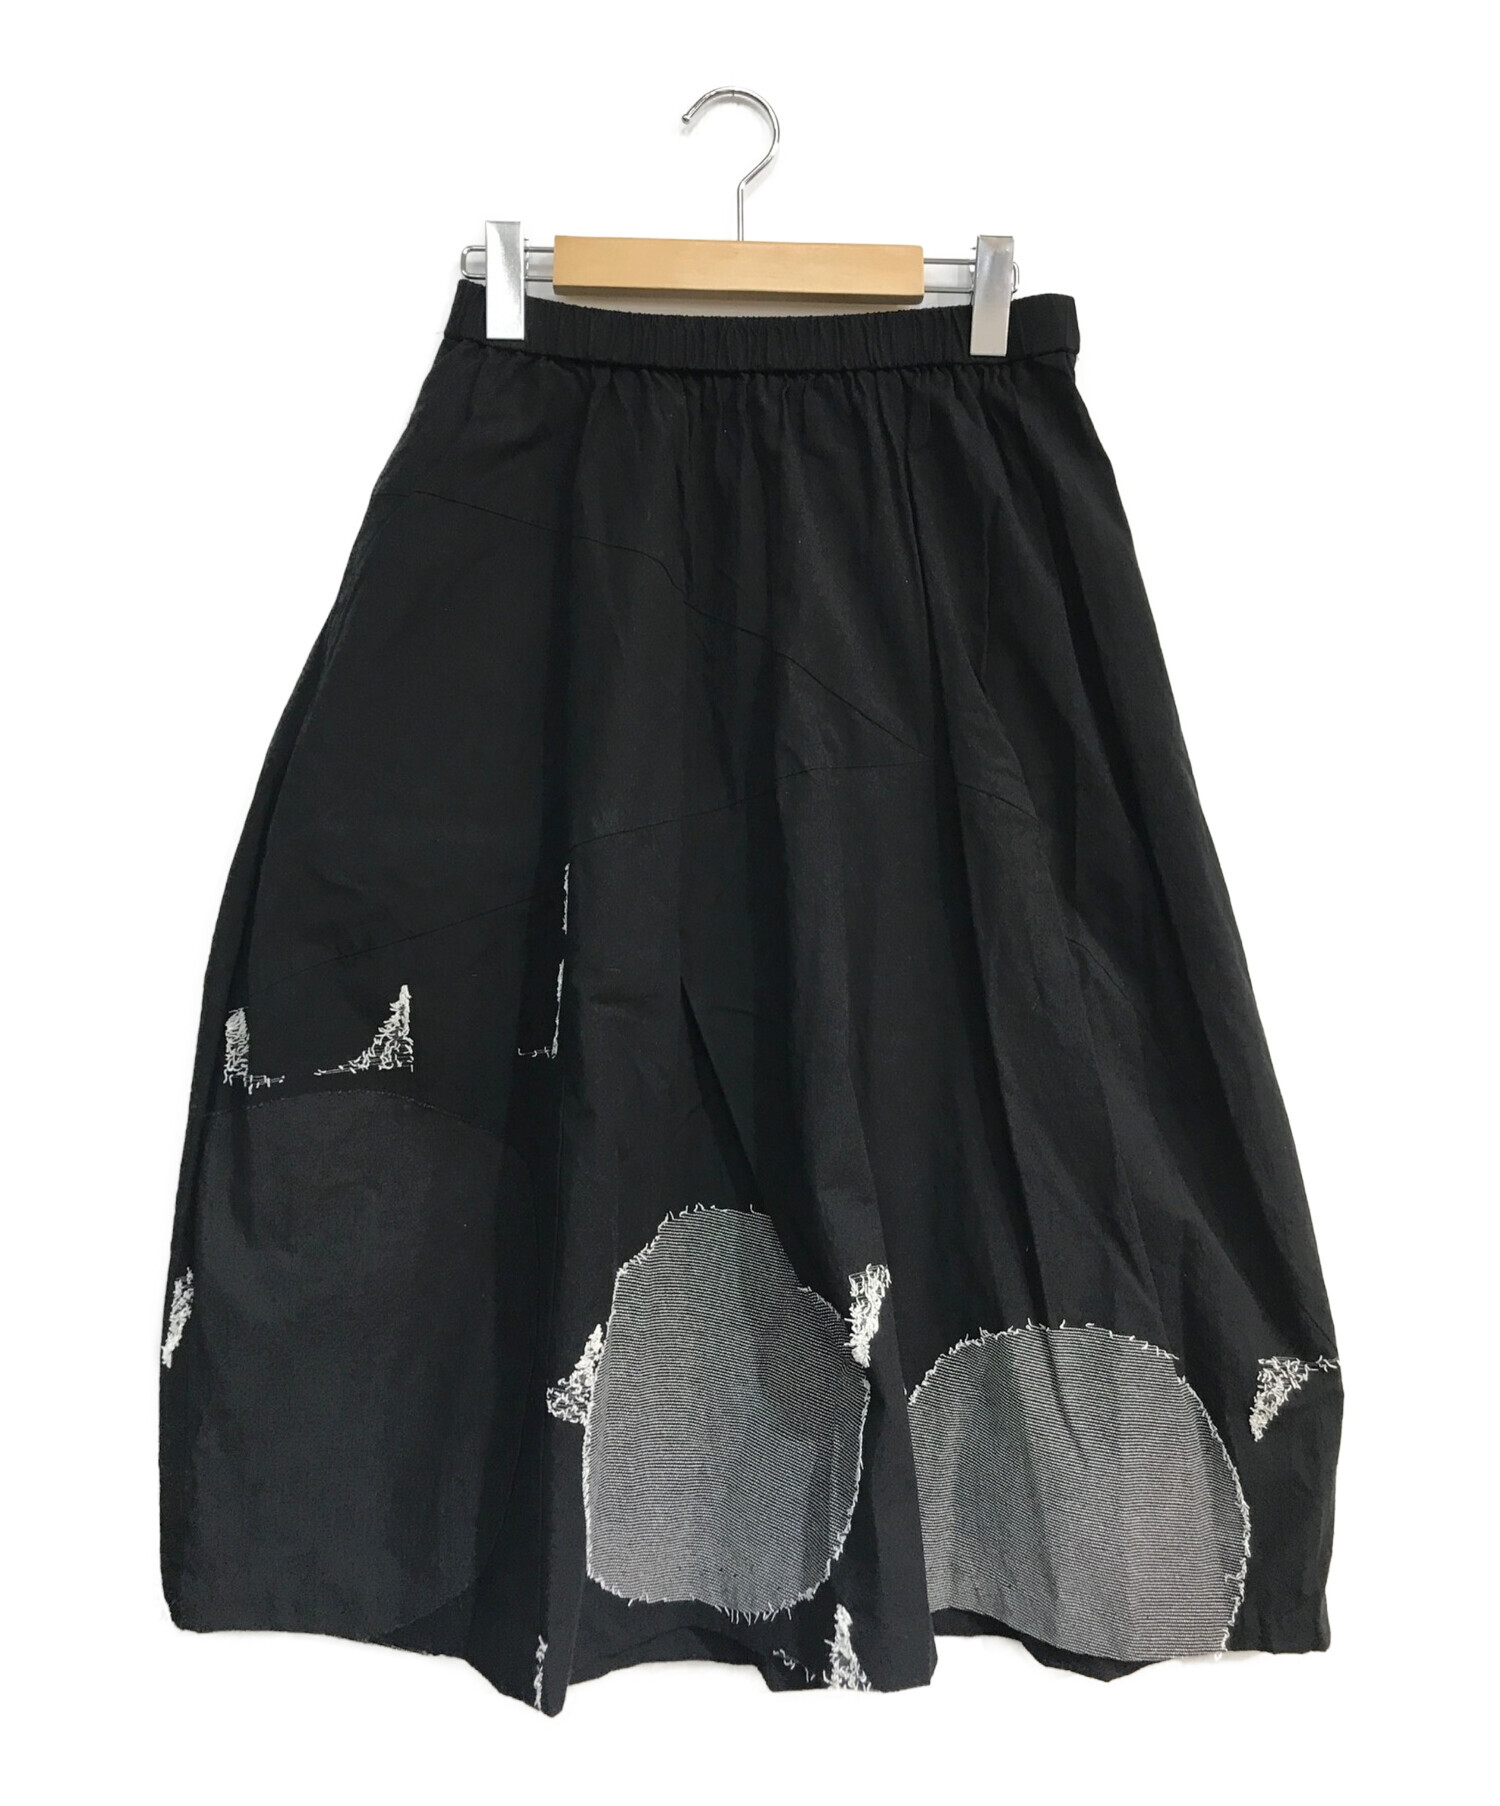 慈雨 (ジウ) ランダムドットクレイジーパターンフレアスカート ブラック サイズ:40